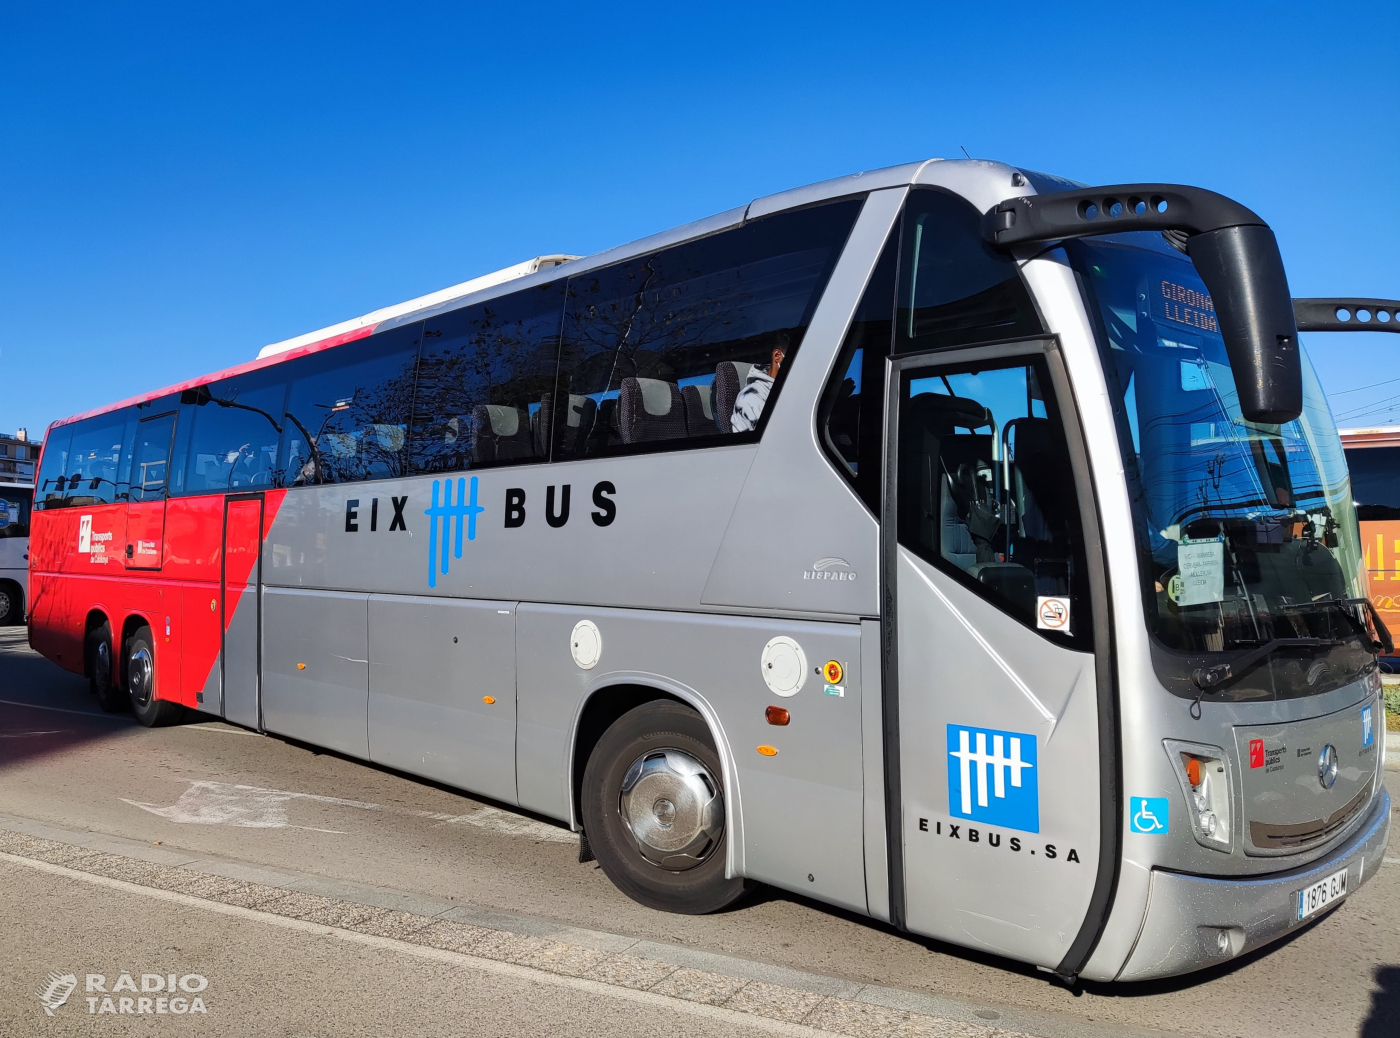 L'Eix Bus, la línia que uneix Girona-Vic-Manresa-Tàrrega-Cervera-Mollerussa-Lleida tanca el 2021 amb 110.580 viatgers